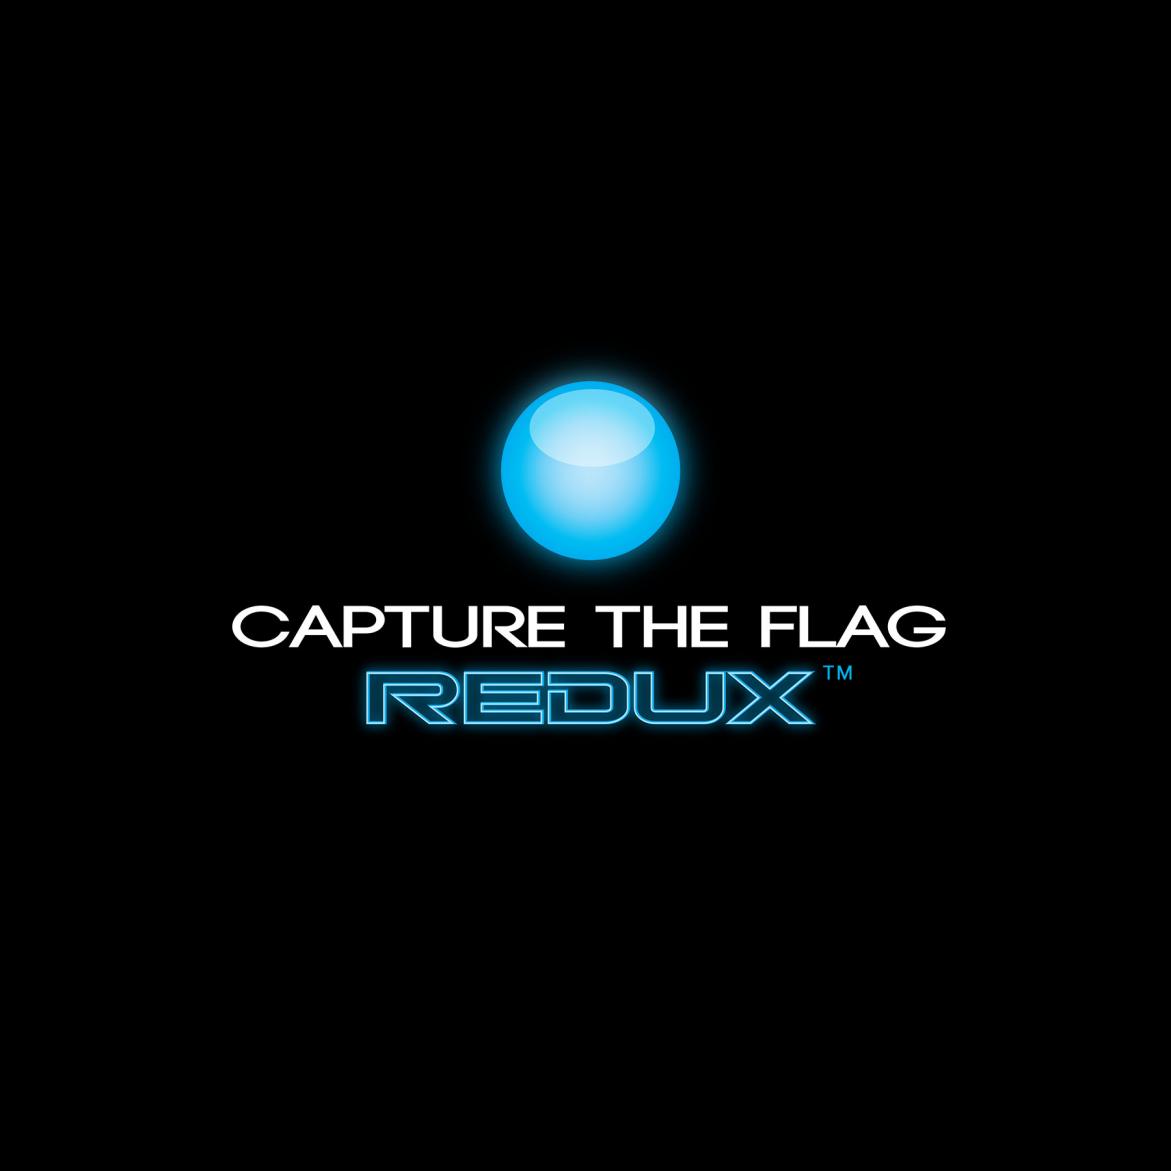 CapturetheFlagREDUX Logo